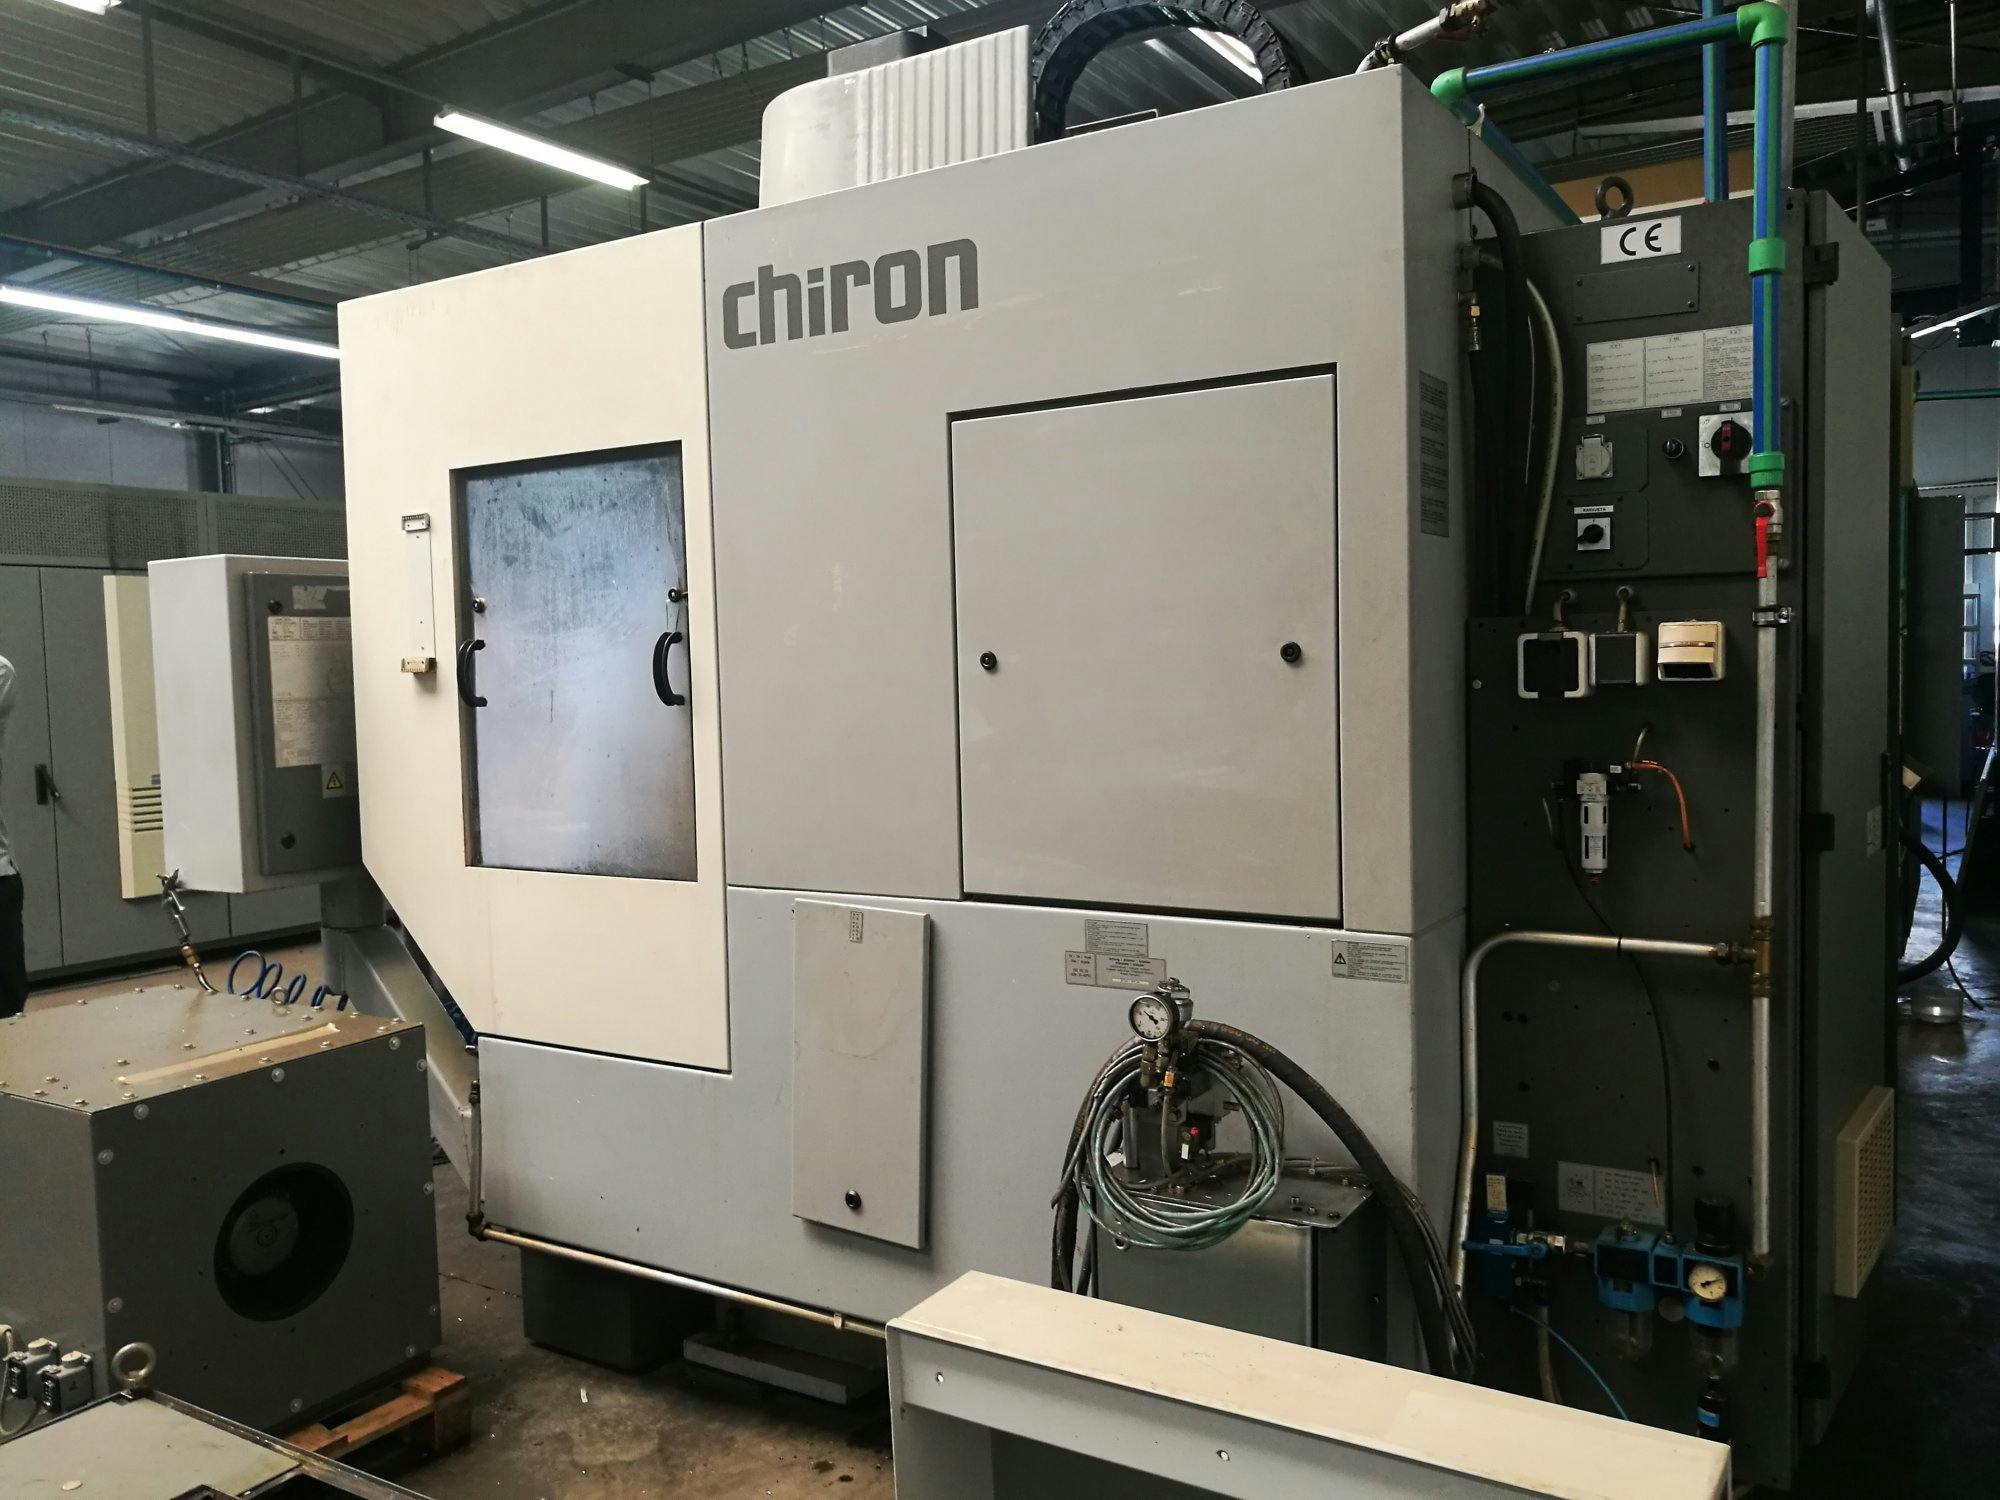 Frontansicht der Chiron FZ 18 S Maschine